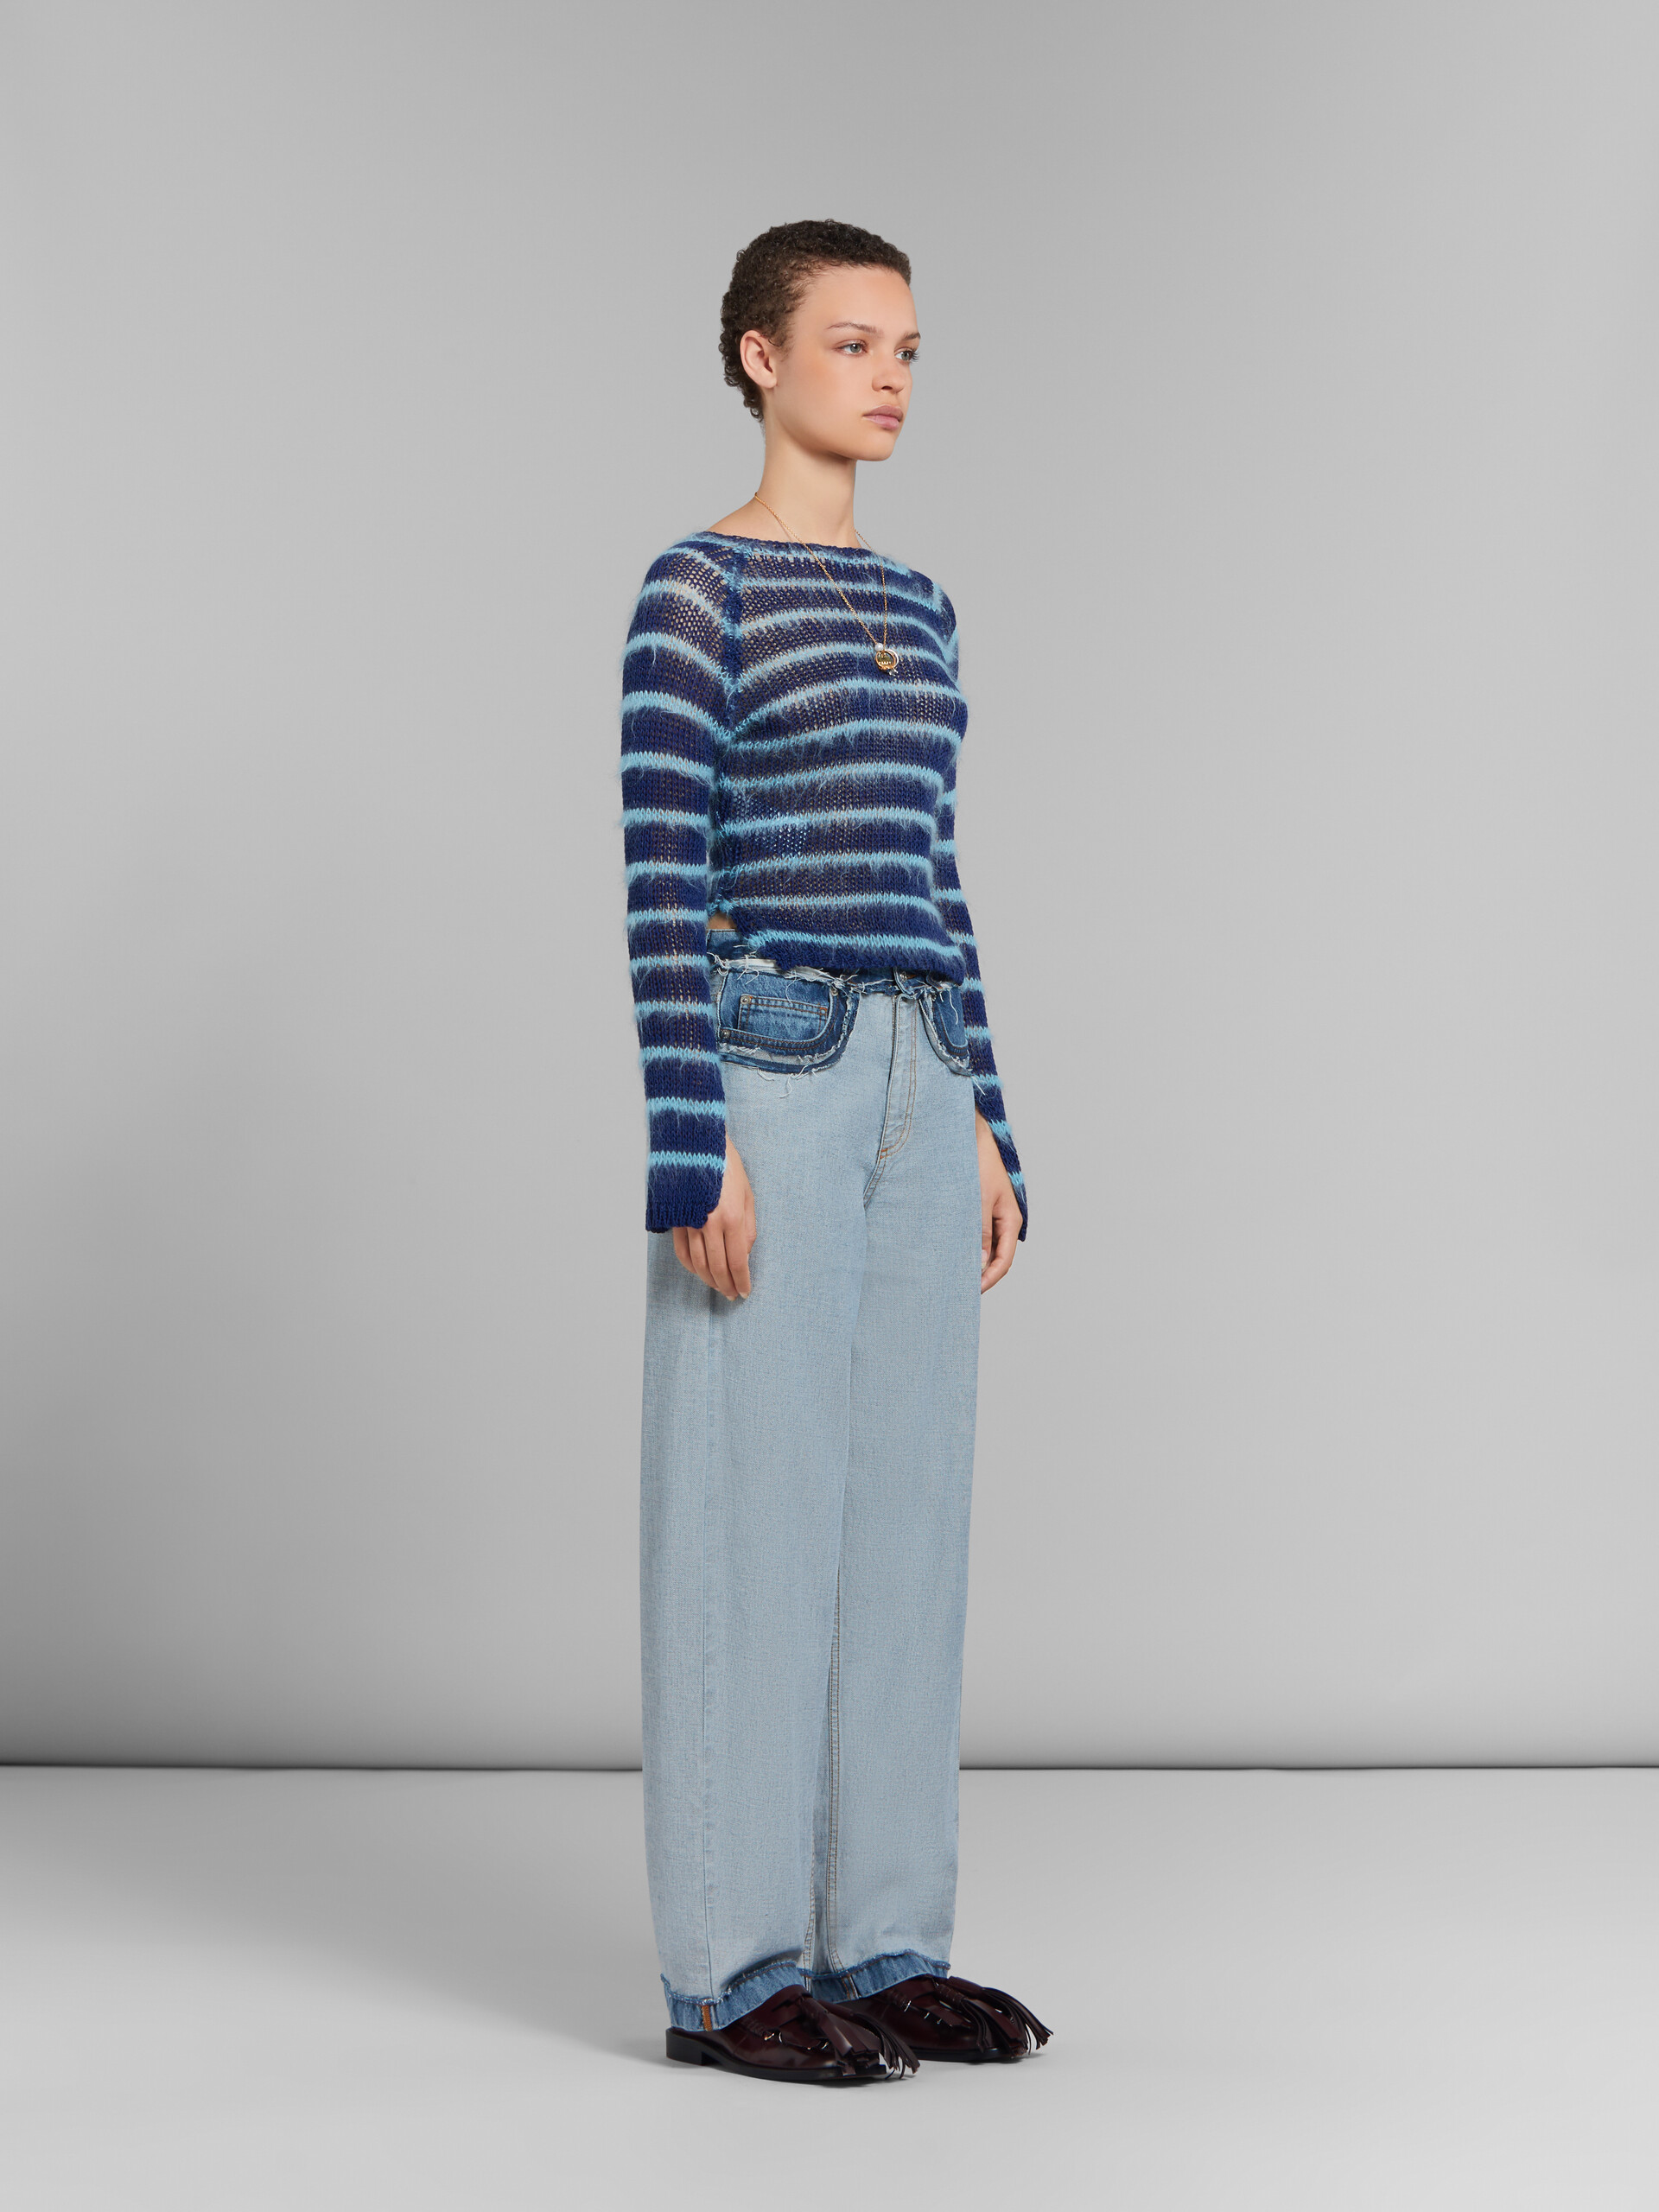 Blaue Denim-Jeans in Inside-Out-Optik und Karottenpassform - Hosen - Image 6